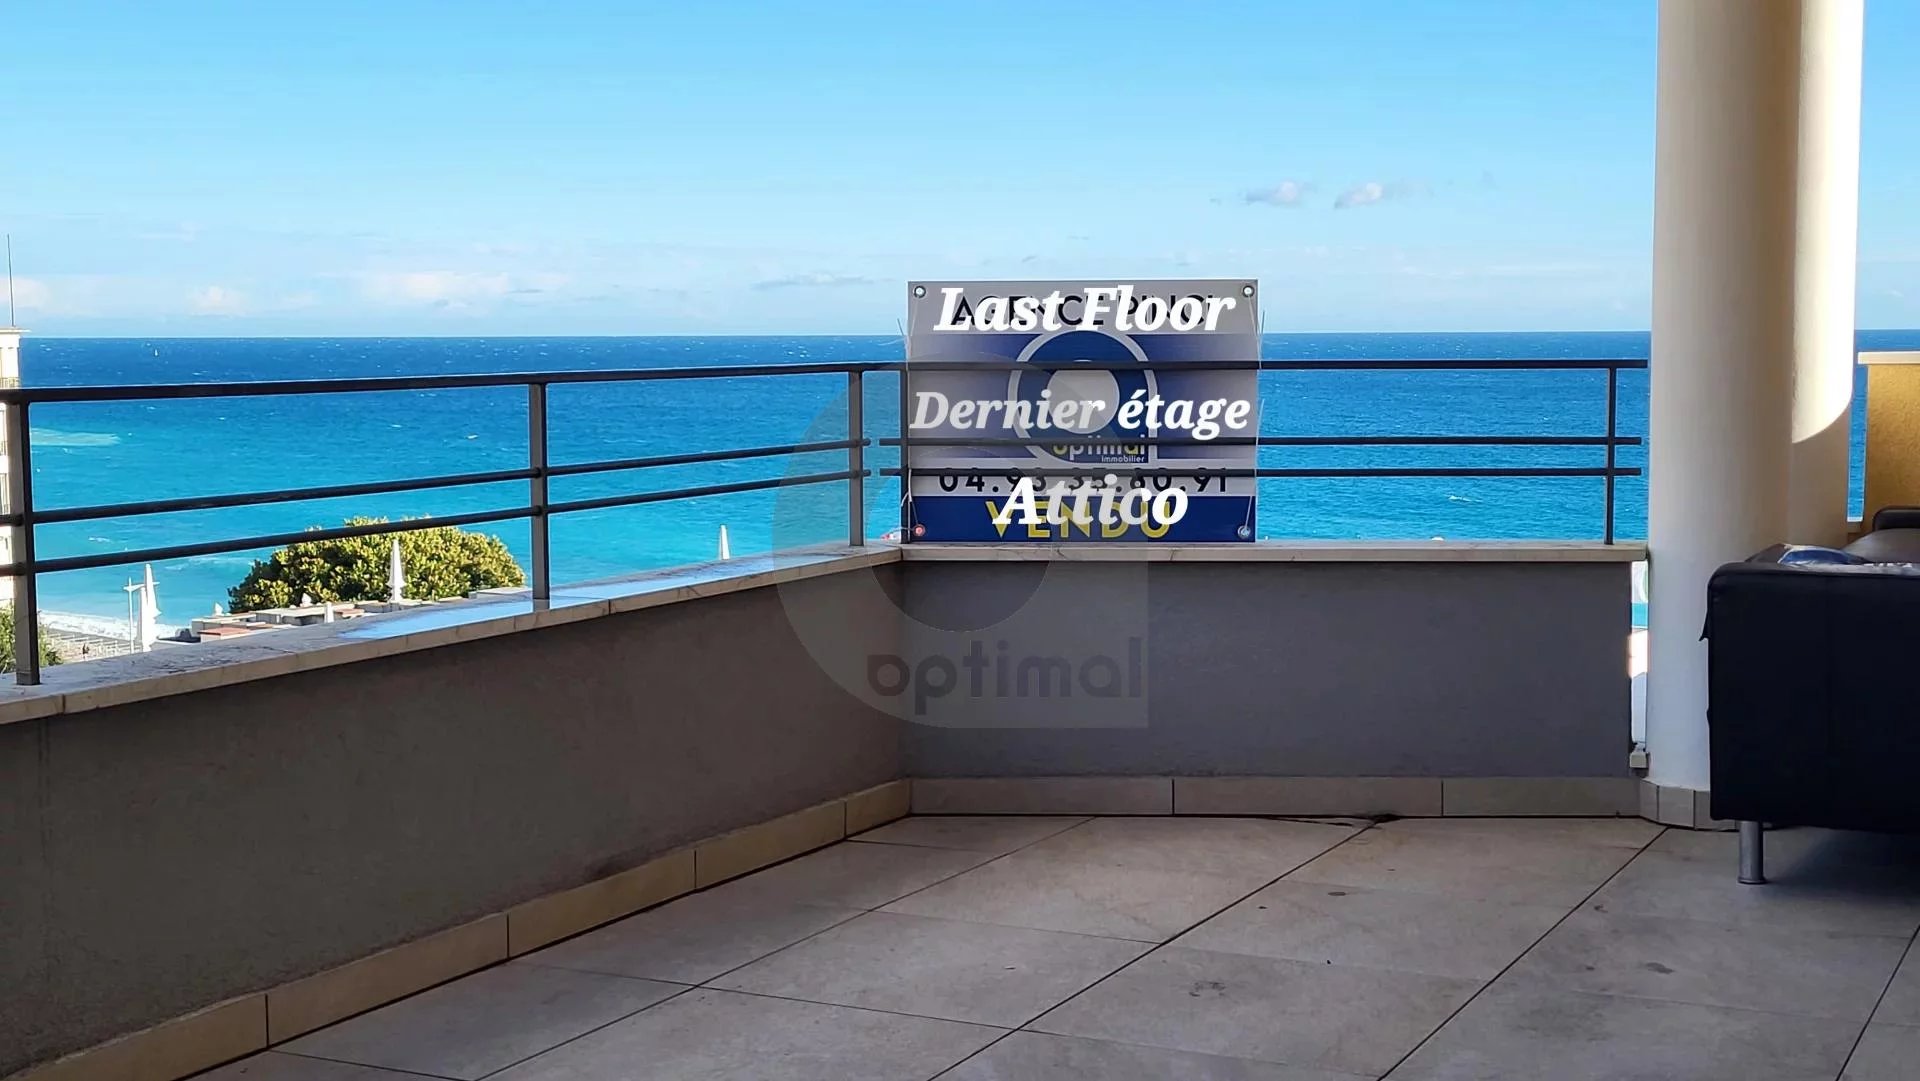 Attico - Mentone centro - Appartamento Trilocale - Terrazza 45M² - vista panoramica.